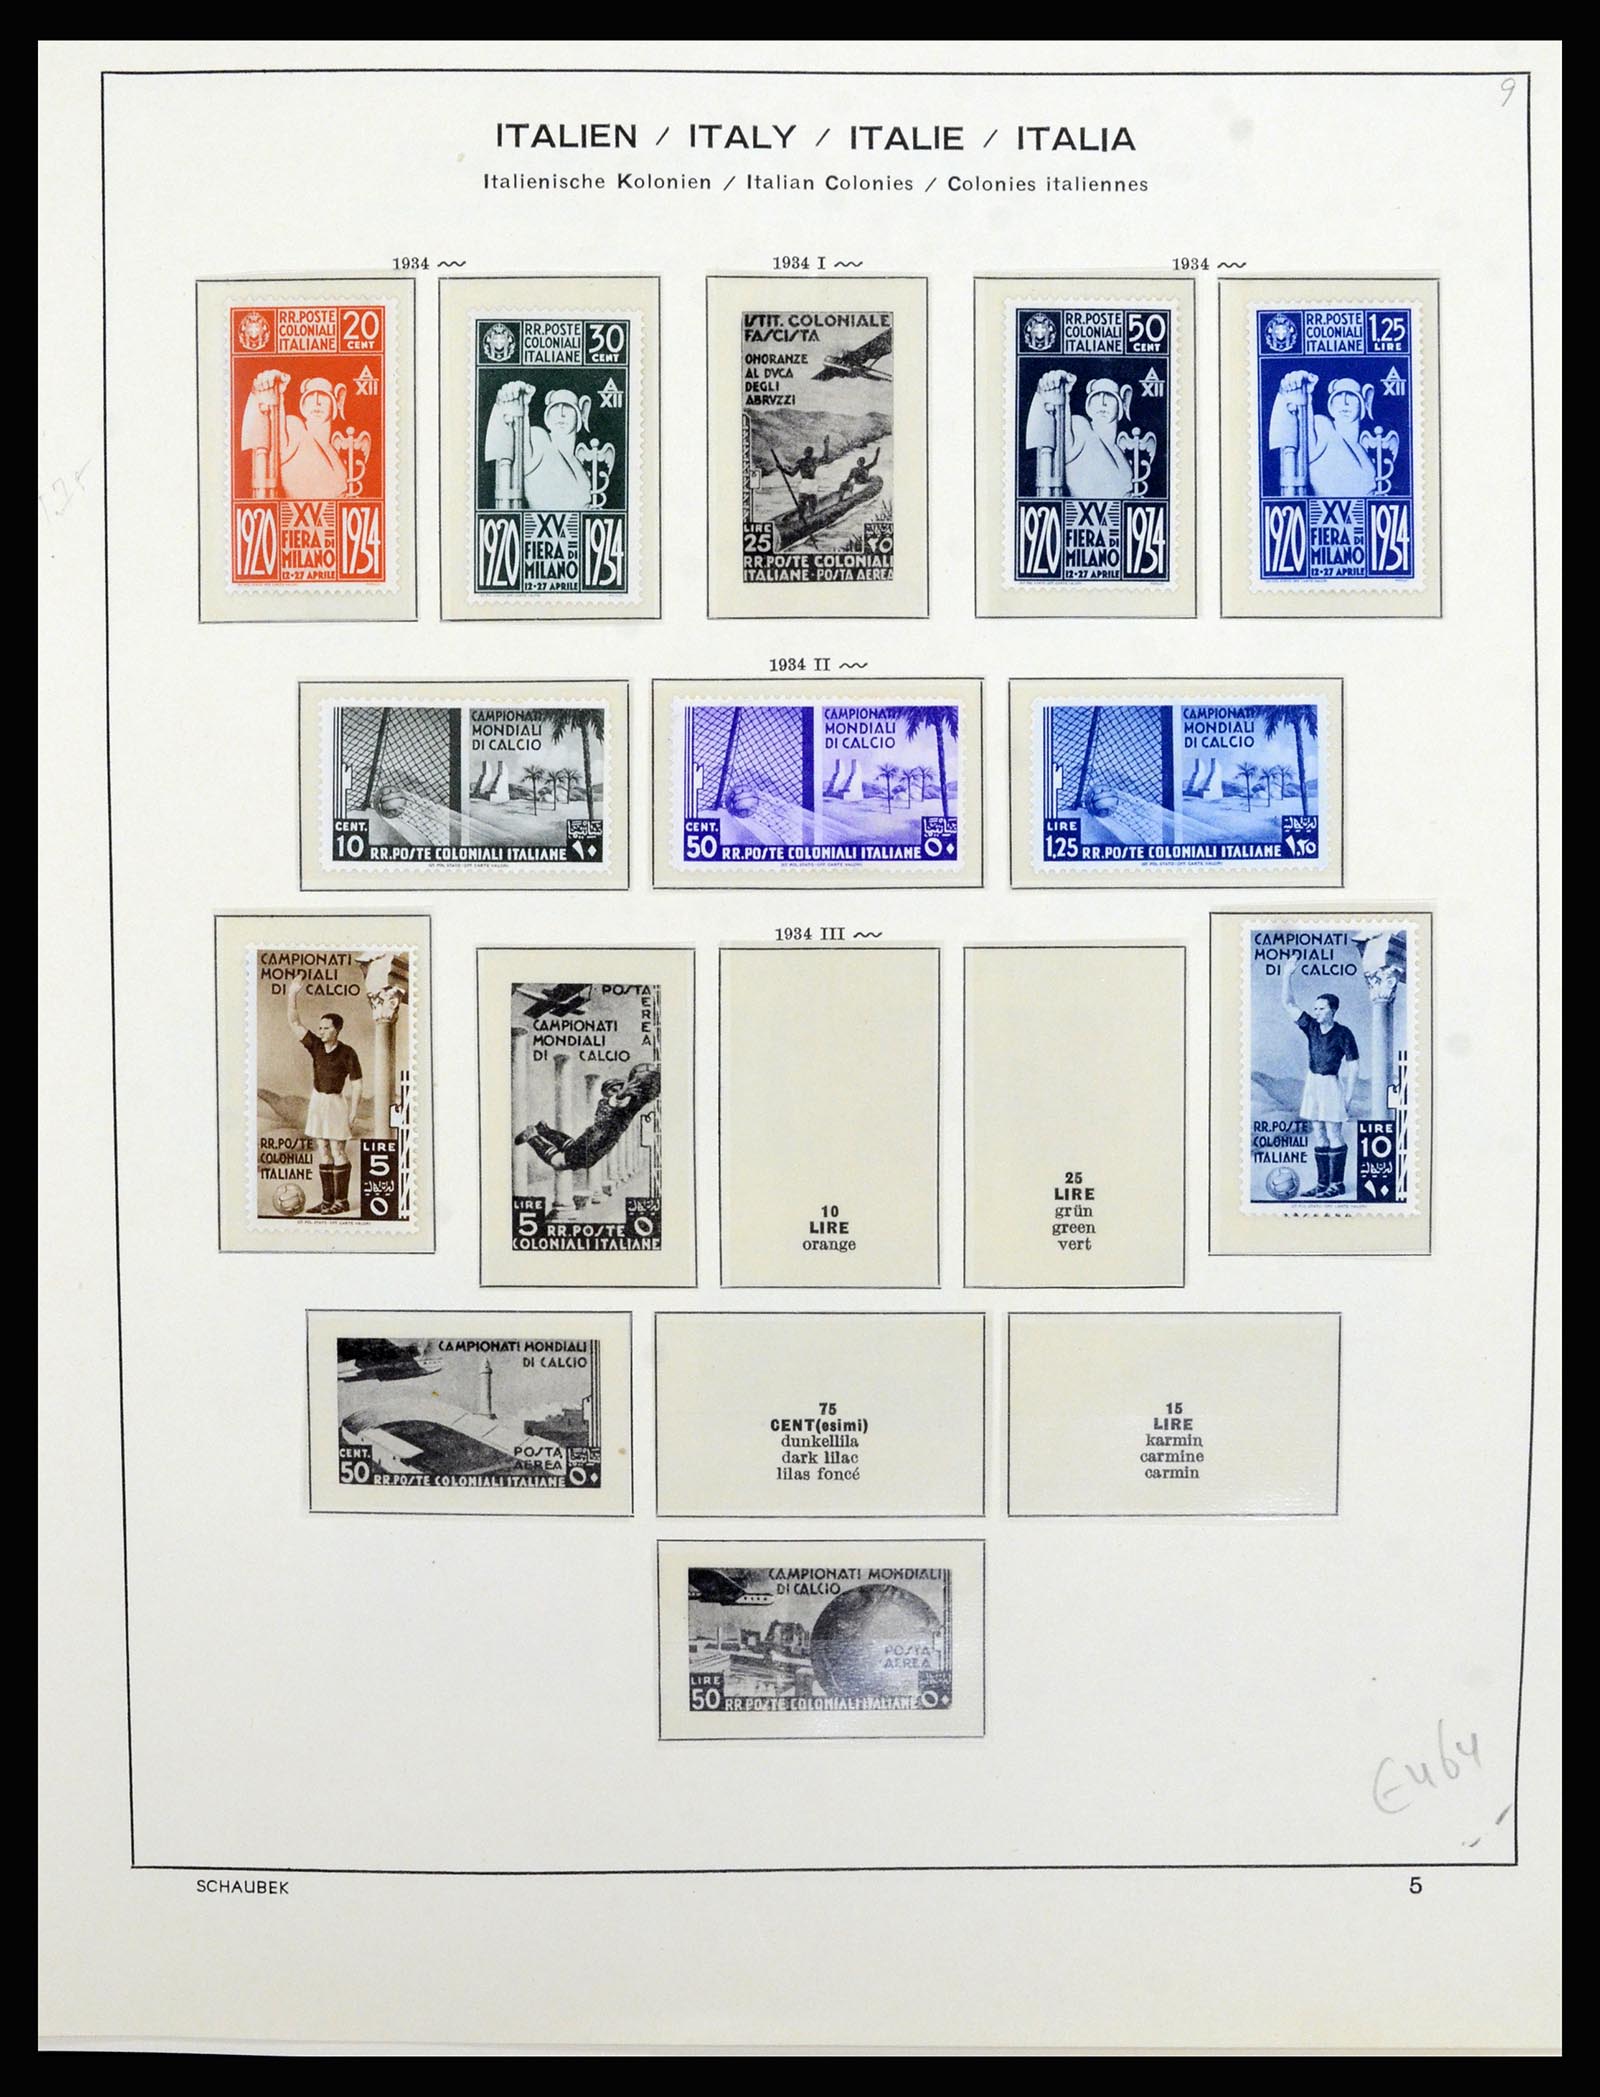 36577 026 - Stamp collection 36577 Italiaanse gebieden 1870-1940.